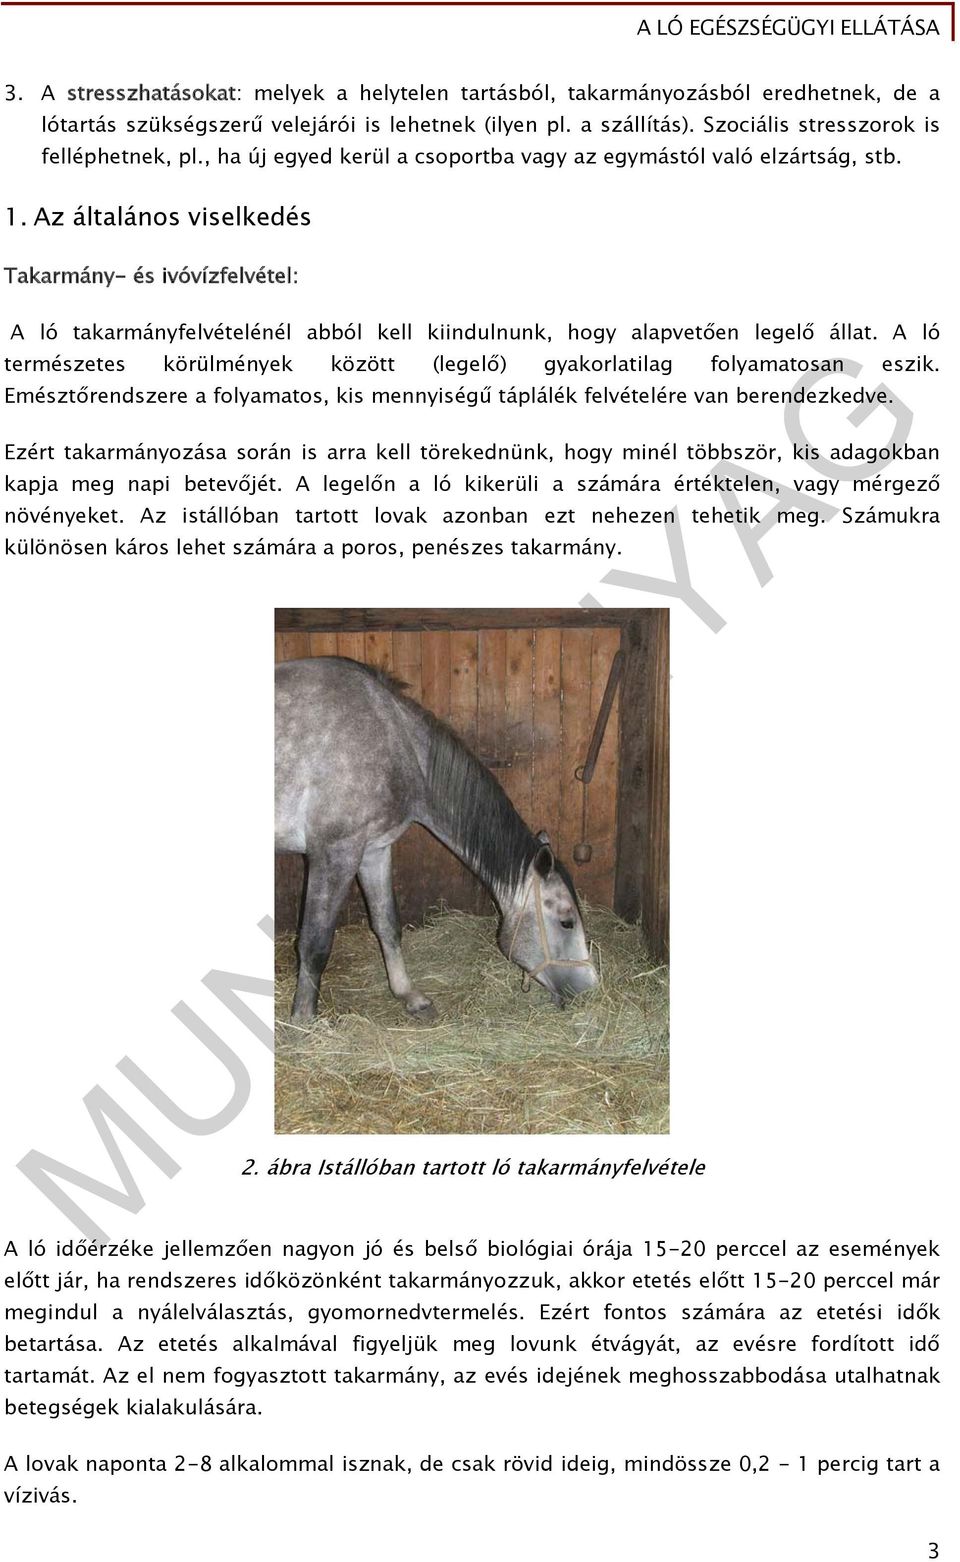 ló szív-egészségügyi lovak)